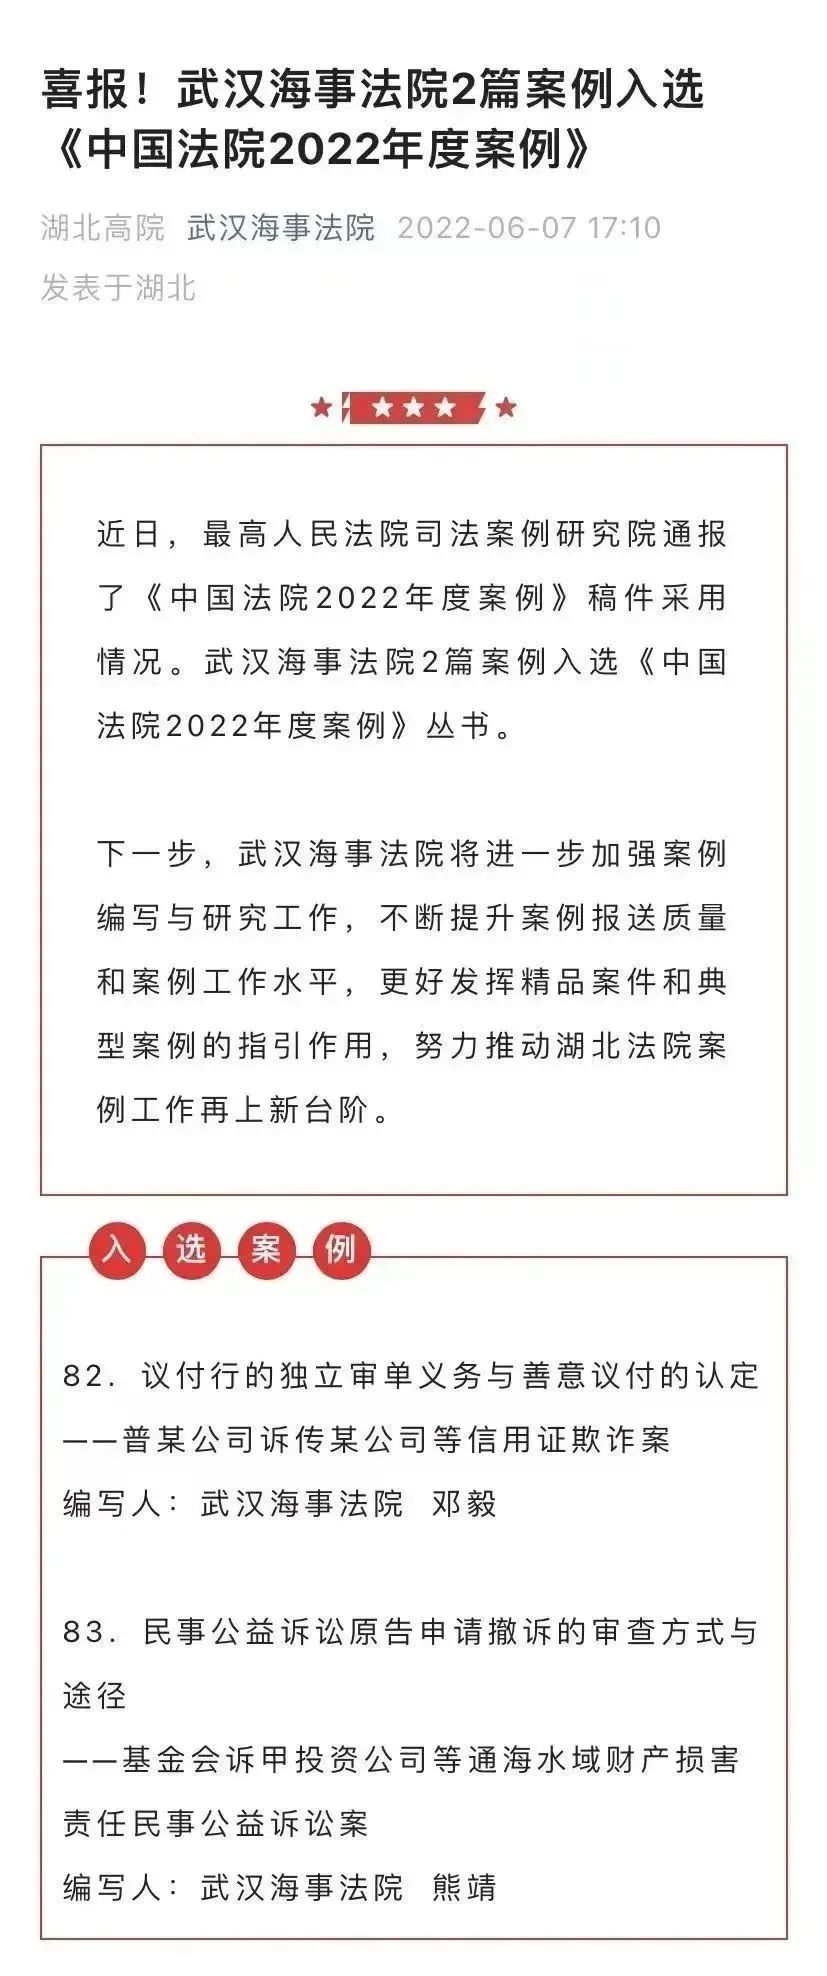 2篇案例入选《中国法院2022年度案例》.jpg